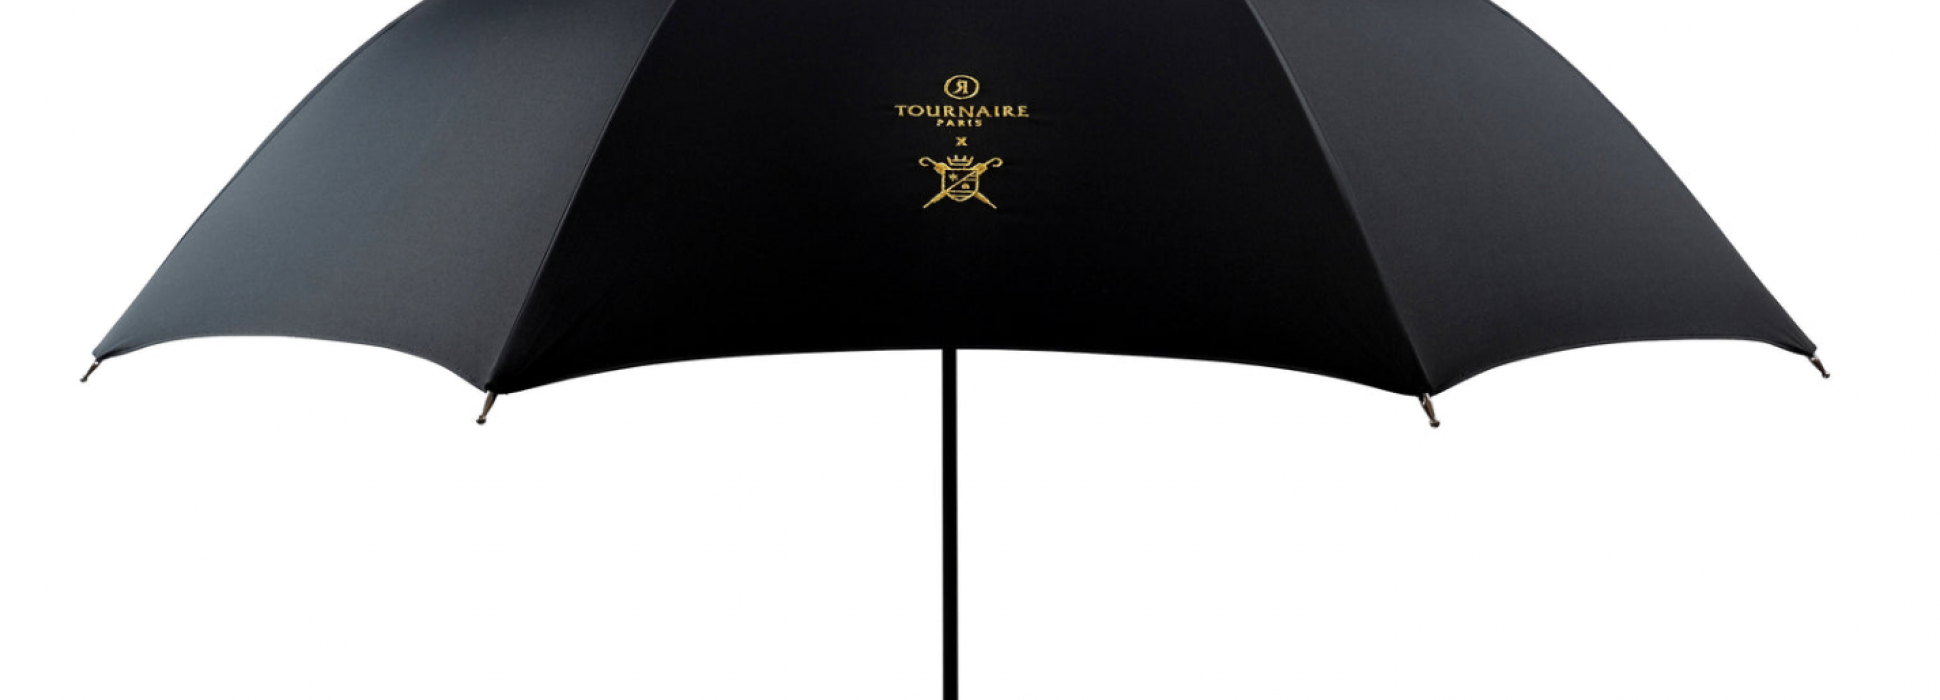 Les parapluies de Cherbourg s’associent avec la maison de joaillerie Tournaire